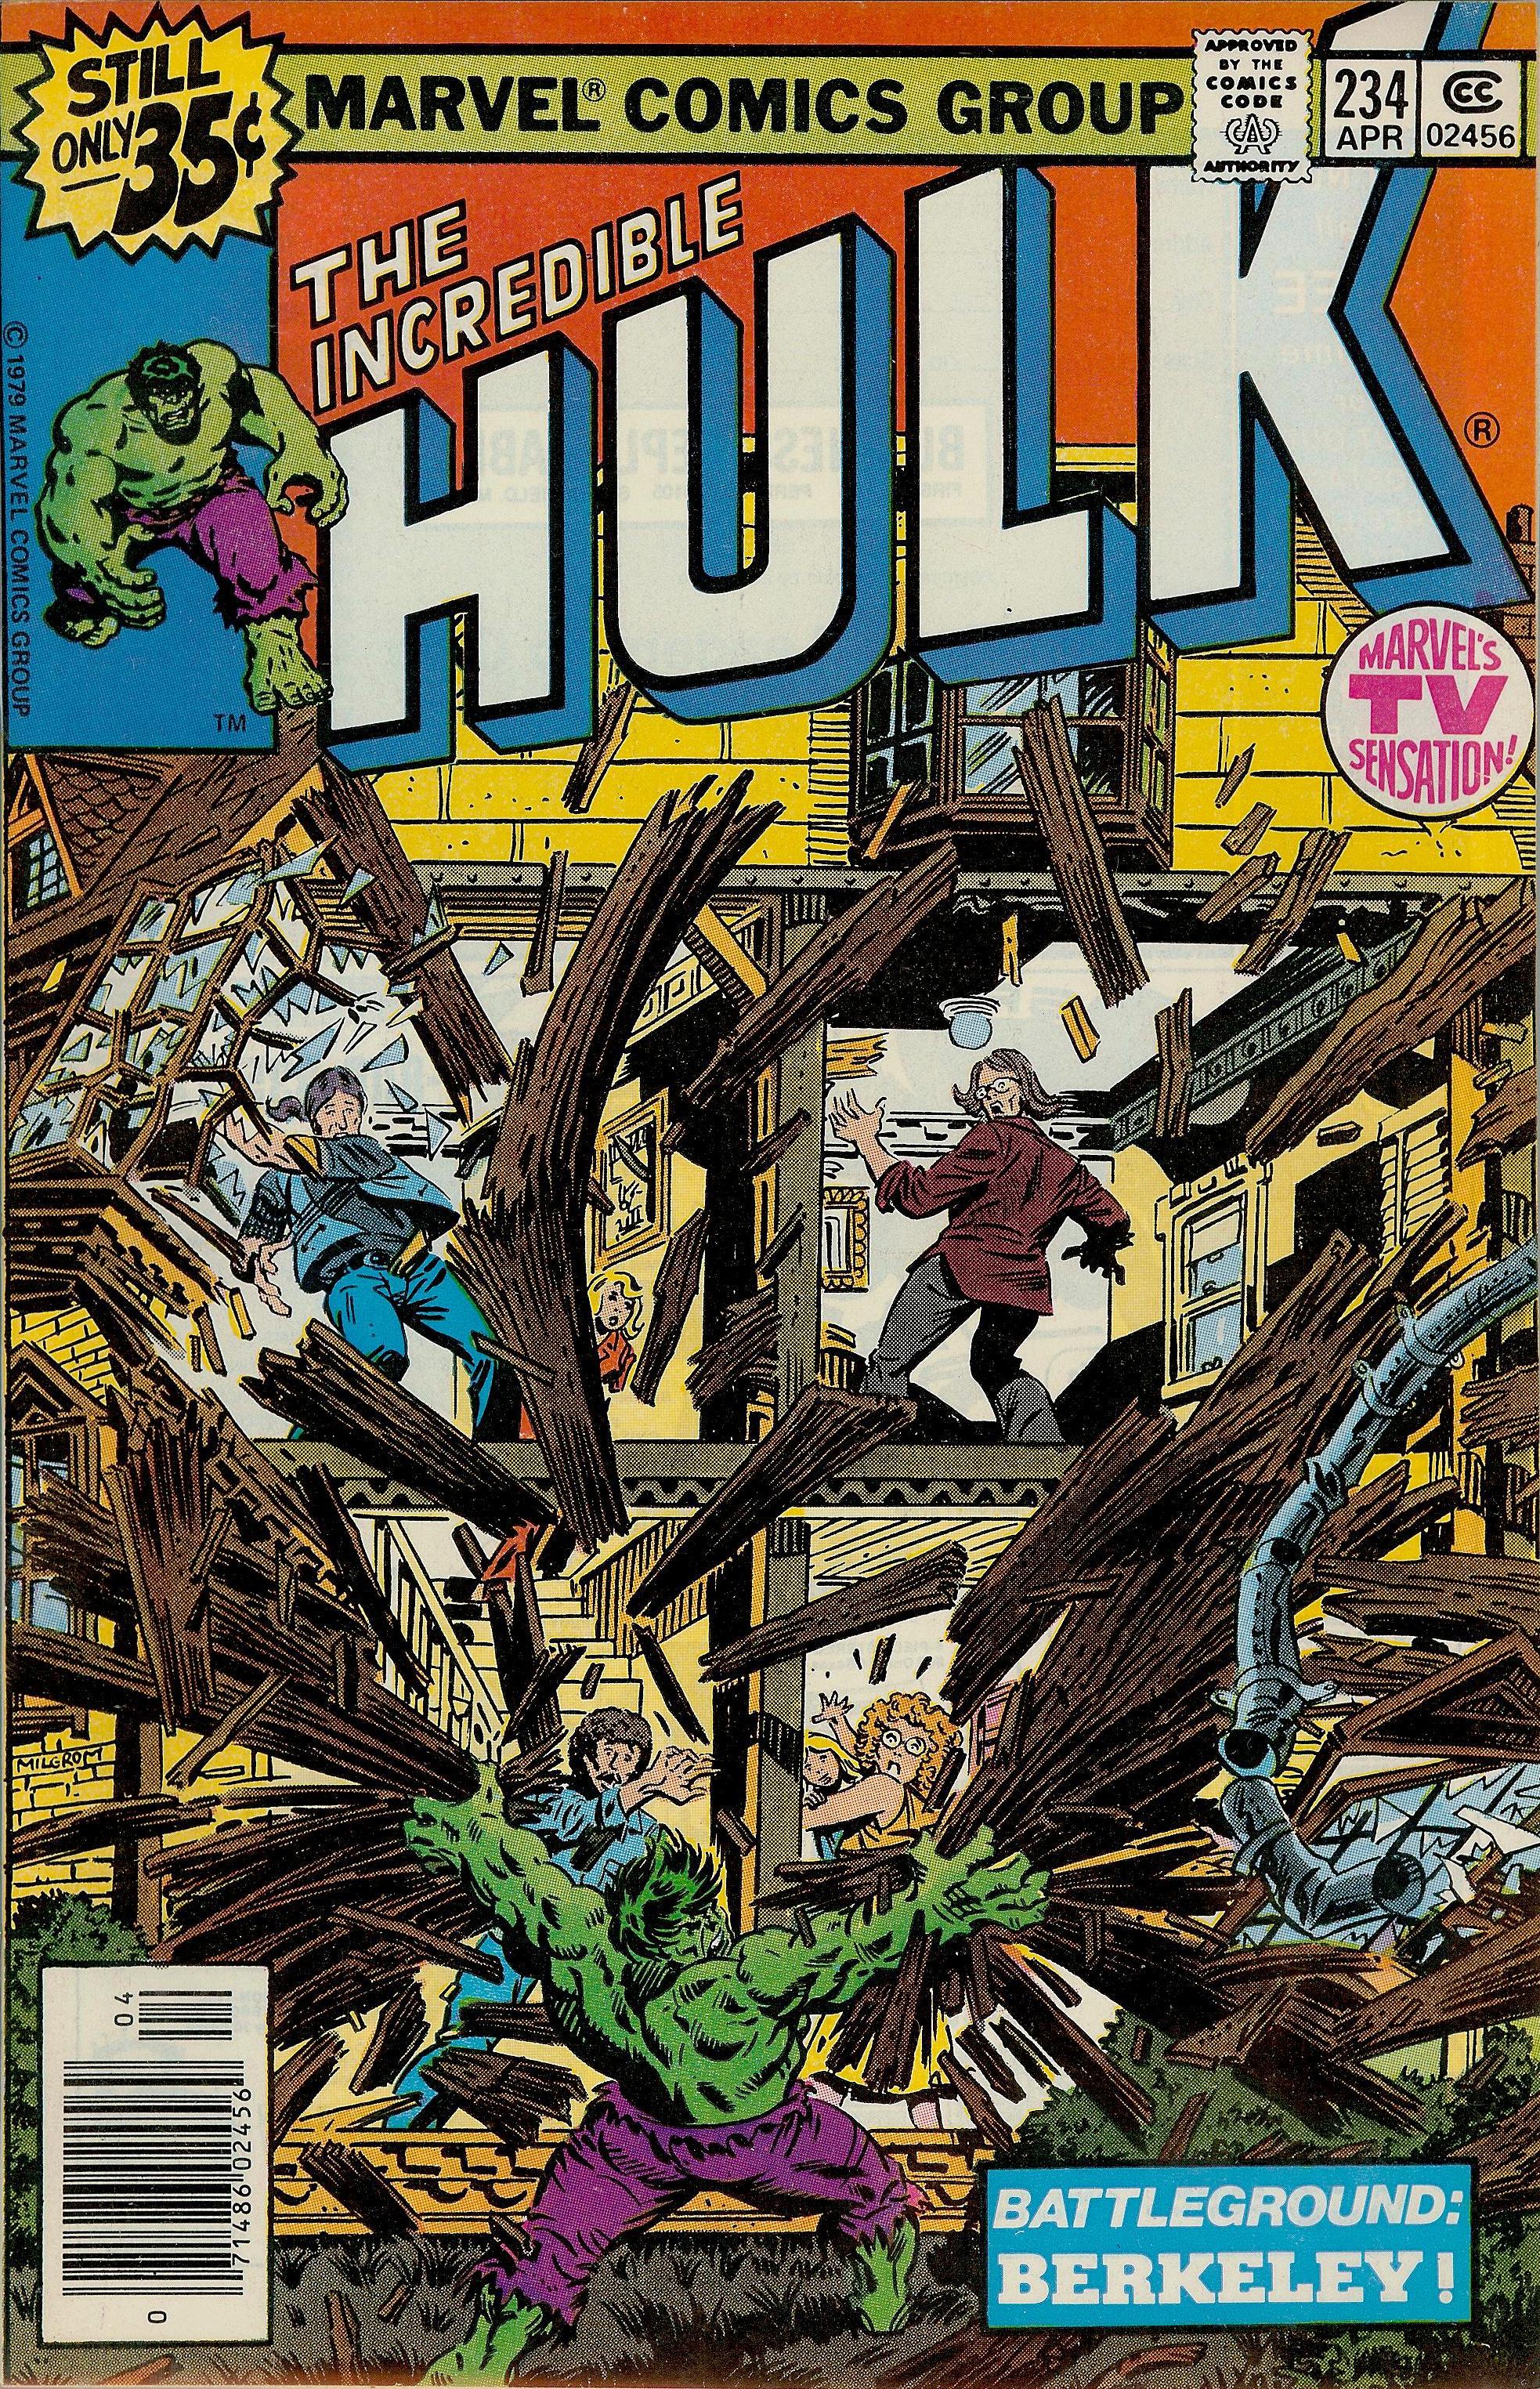 The Incredible Hulk Vol. 1 #234